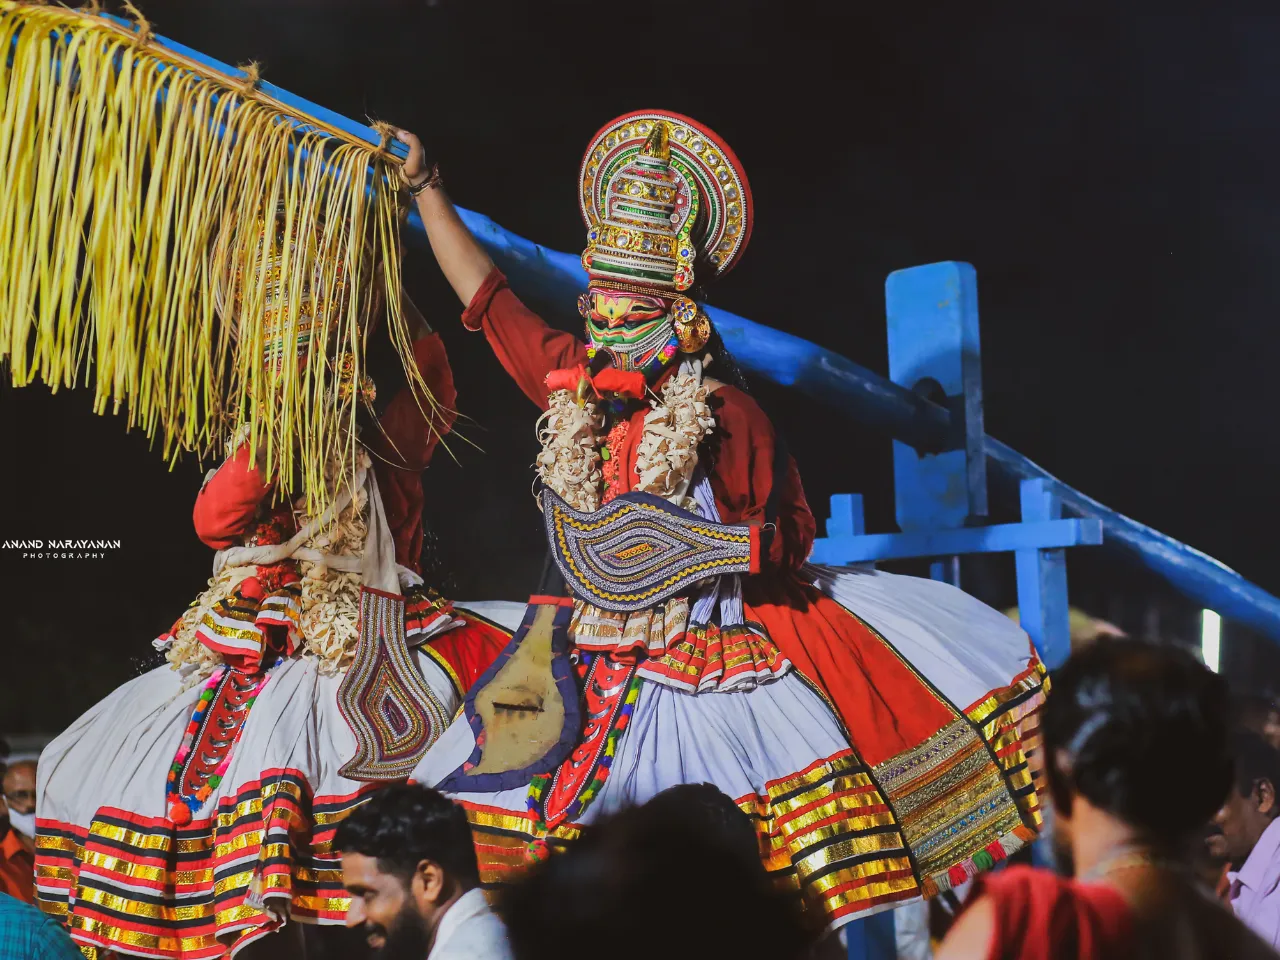 Attuvela Mahotsavam: The Biggest Water Festival of Kerala!